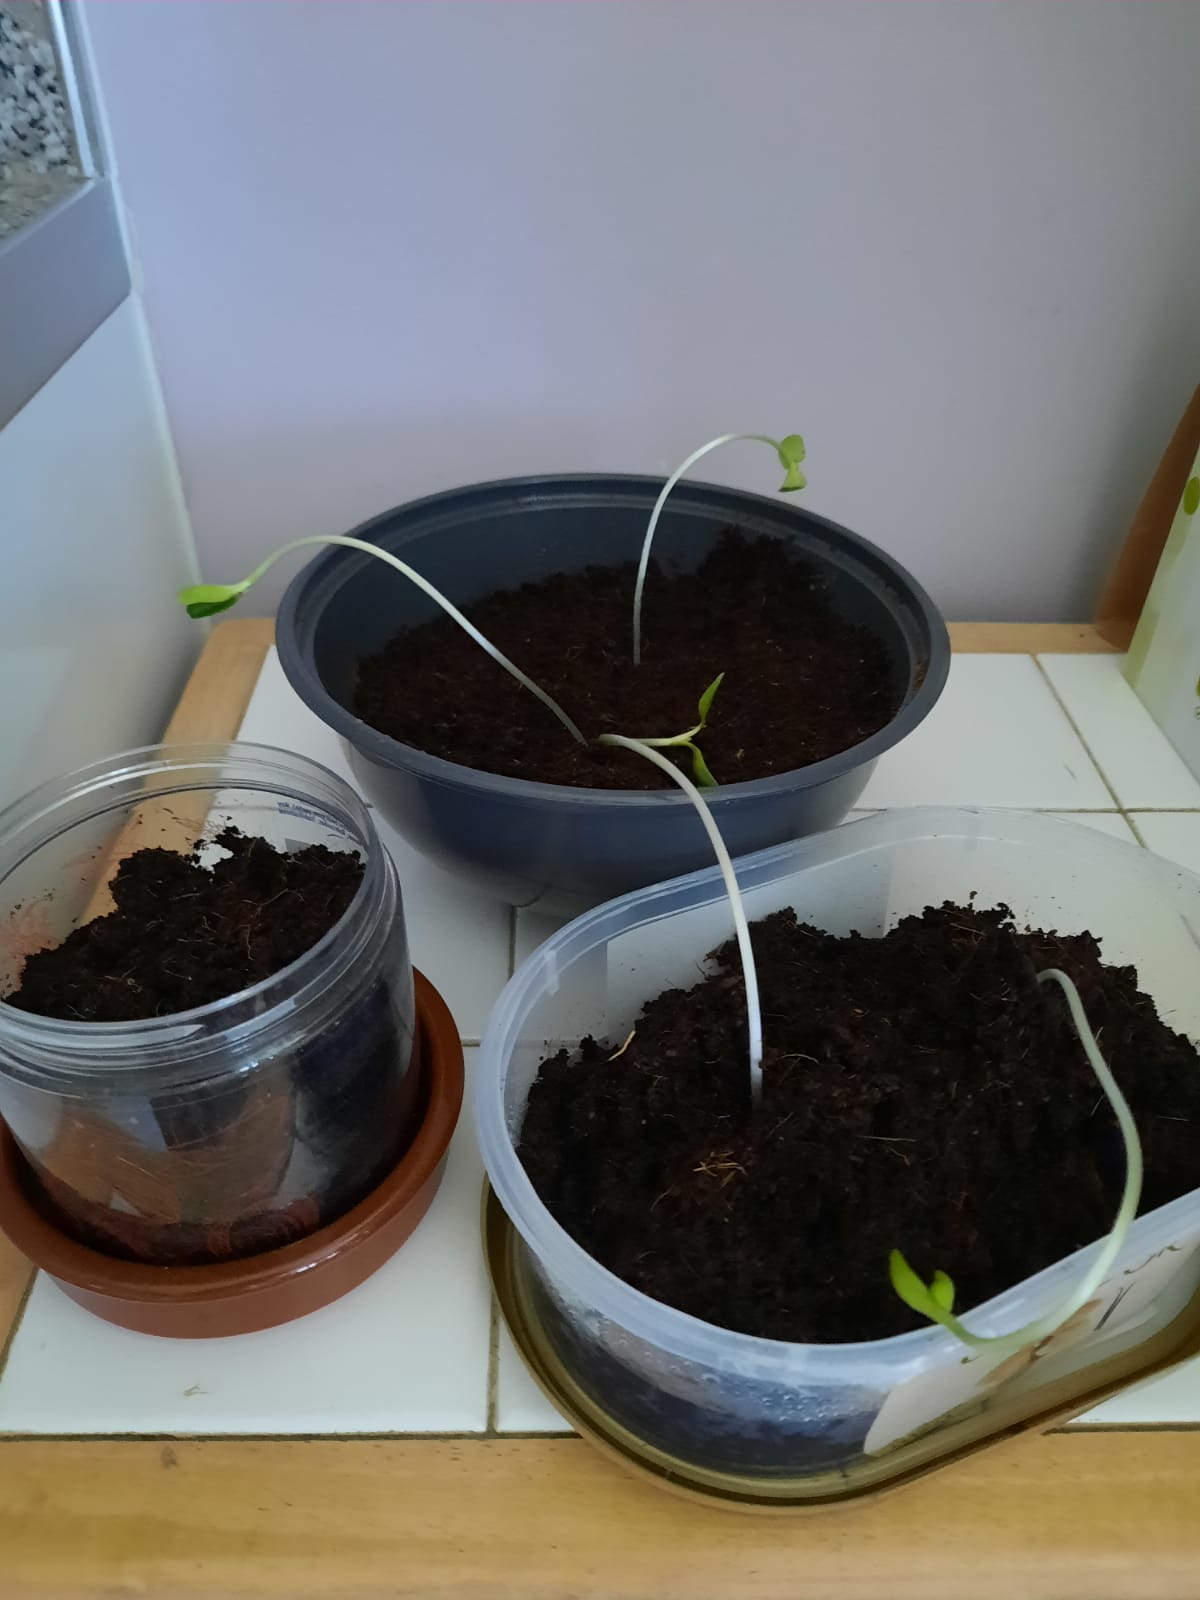 Phuong L - Sunflower (5 seeds) 1 week, 2 days